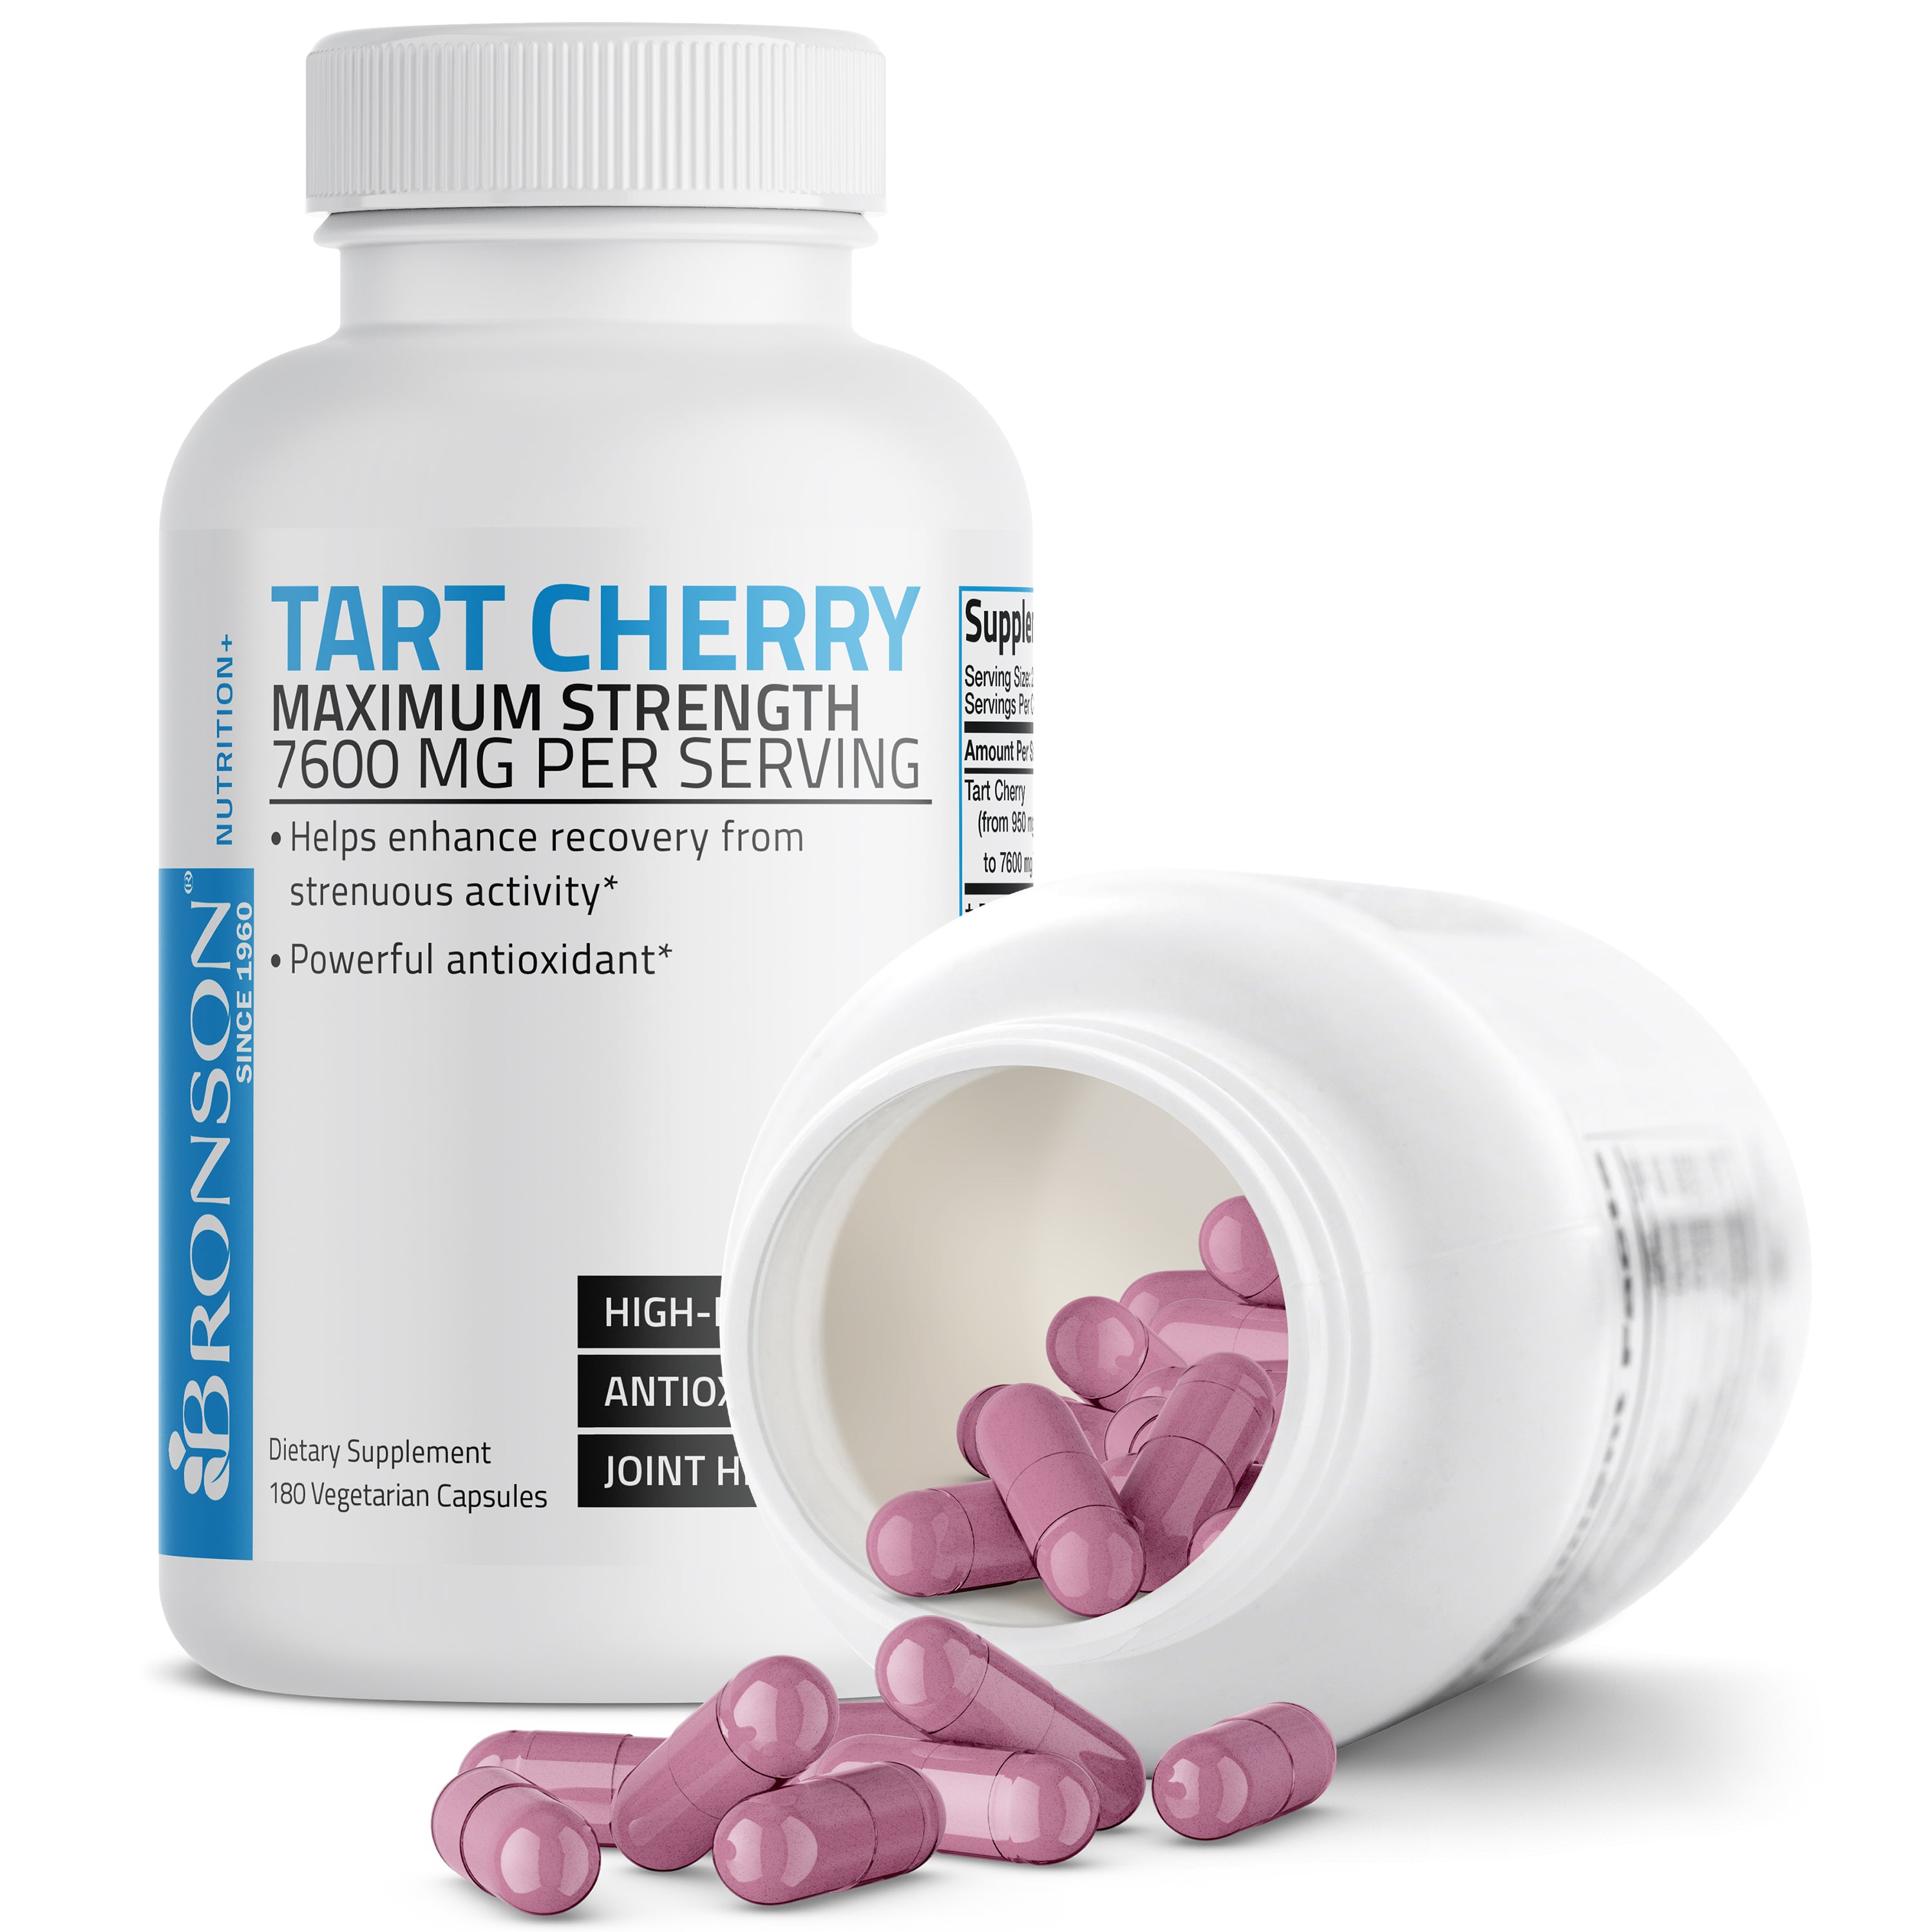 Tart Cherry Extract Maximum Strength - 7,600 mg - 180 Vegetarian Capsules view 5 of 6